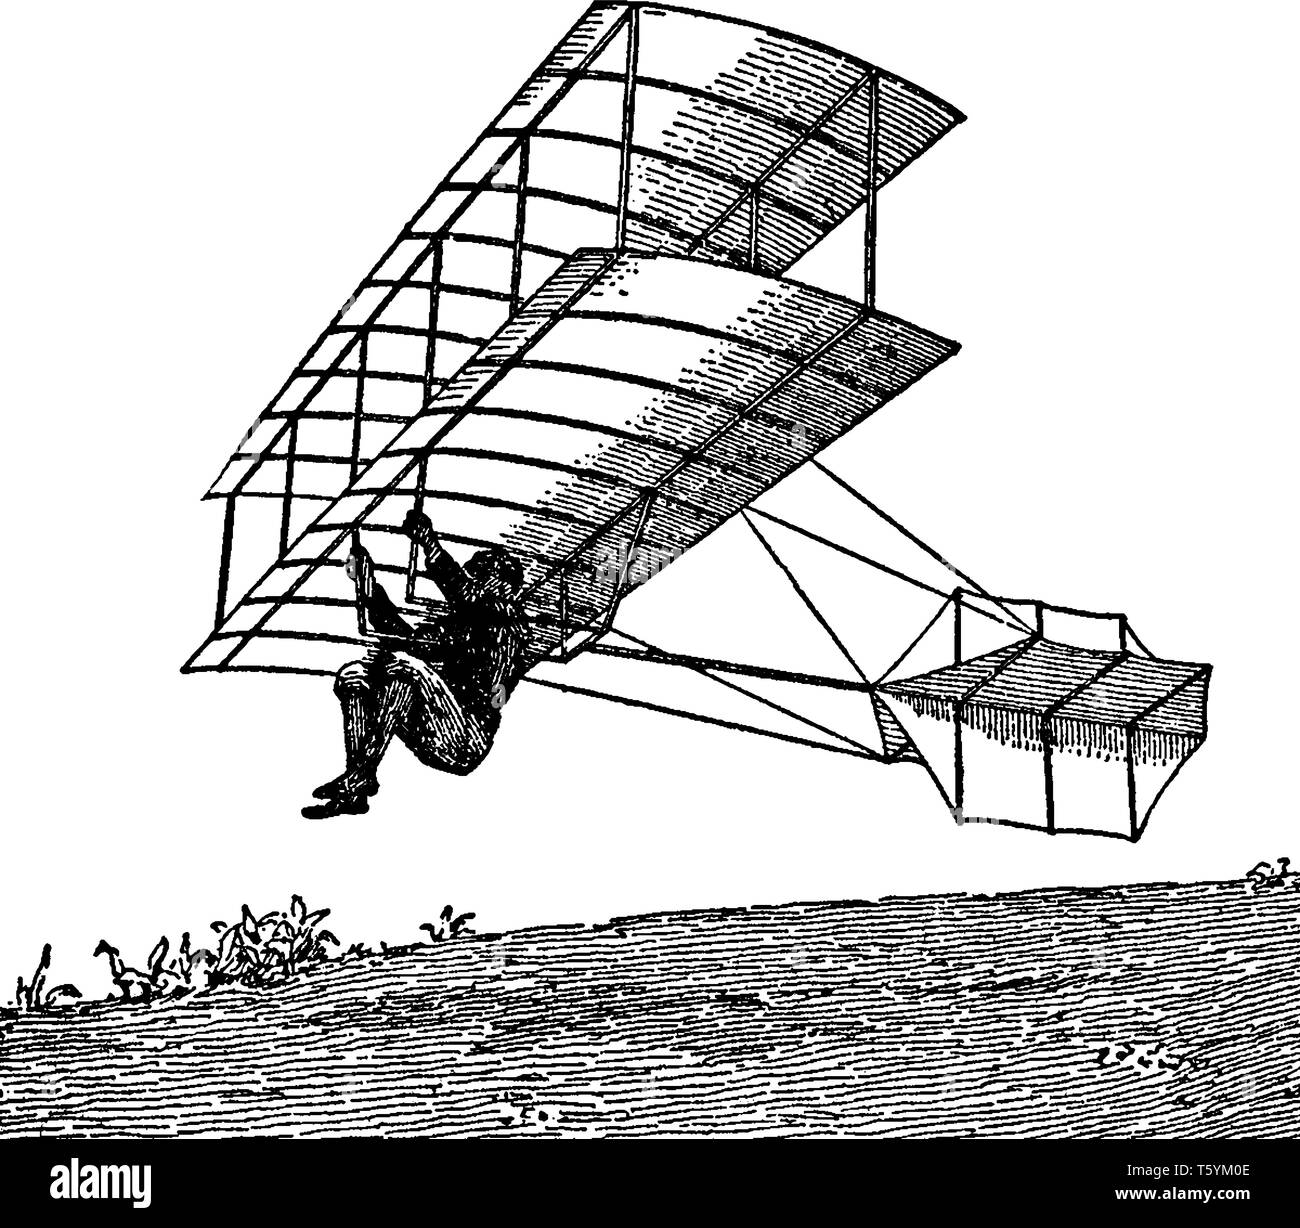 Doppeldecker Gleiten von Chanute entwickelt wurde sein größter Erfolg auf dem Gebiet der Luftfahrt, vintage Strichzeichnung oder Gravur illustrati Stock Vektor